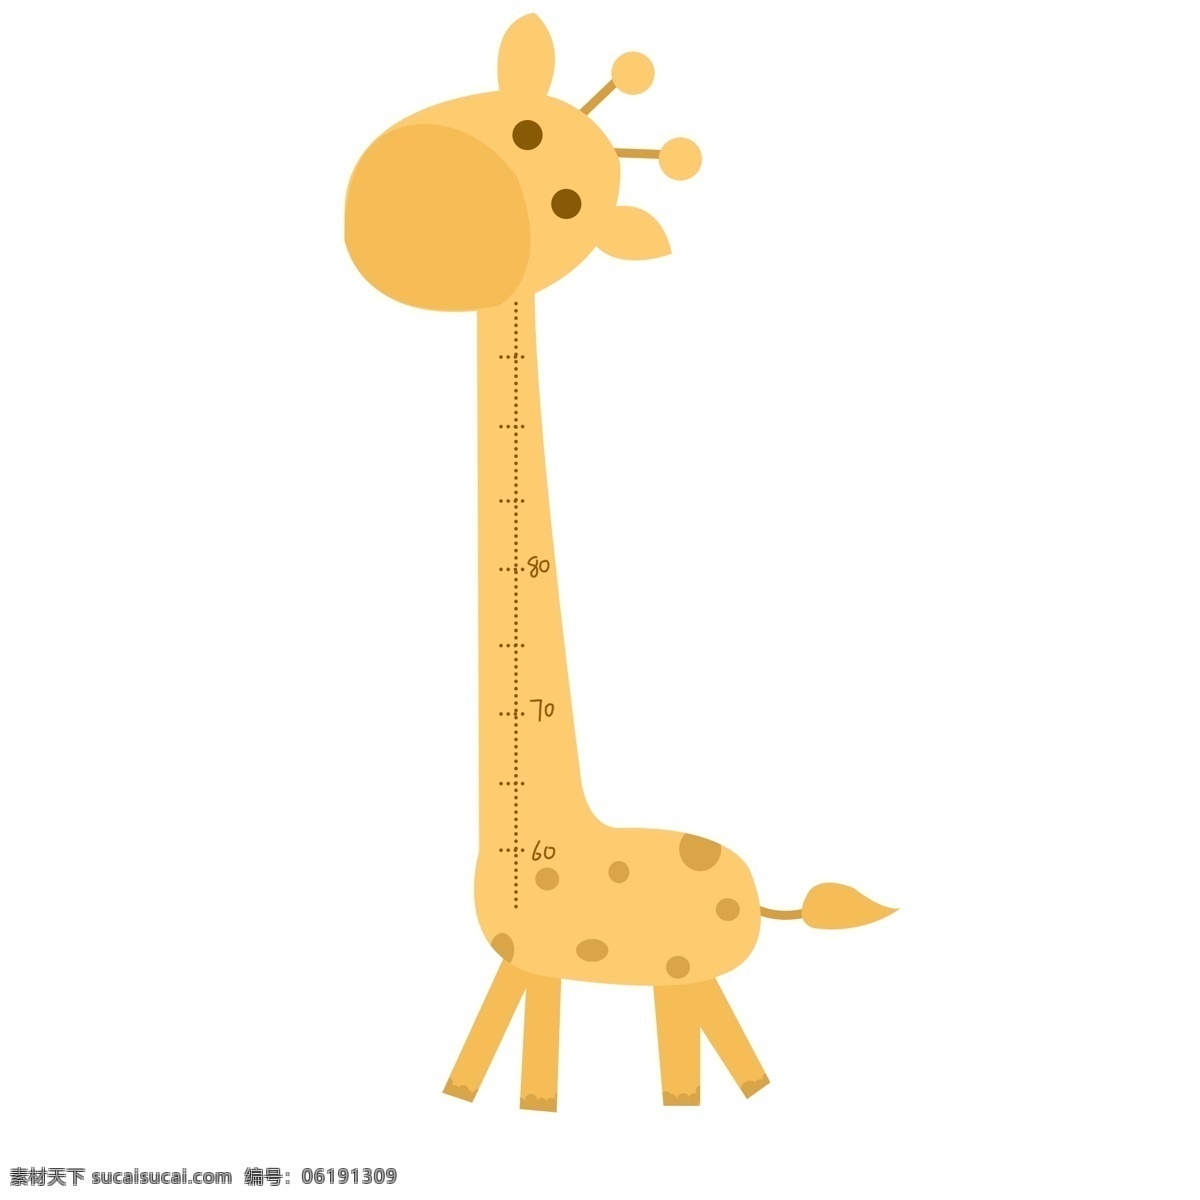 卡通 长颈鹿 测量 身高 卡通长颈鹿 长颈鹿素材 测量身高 尺子 长颈鹿尺子